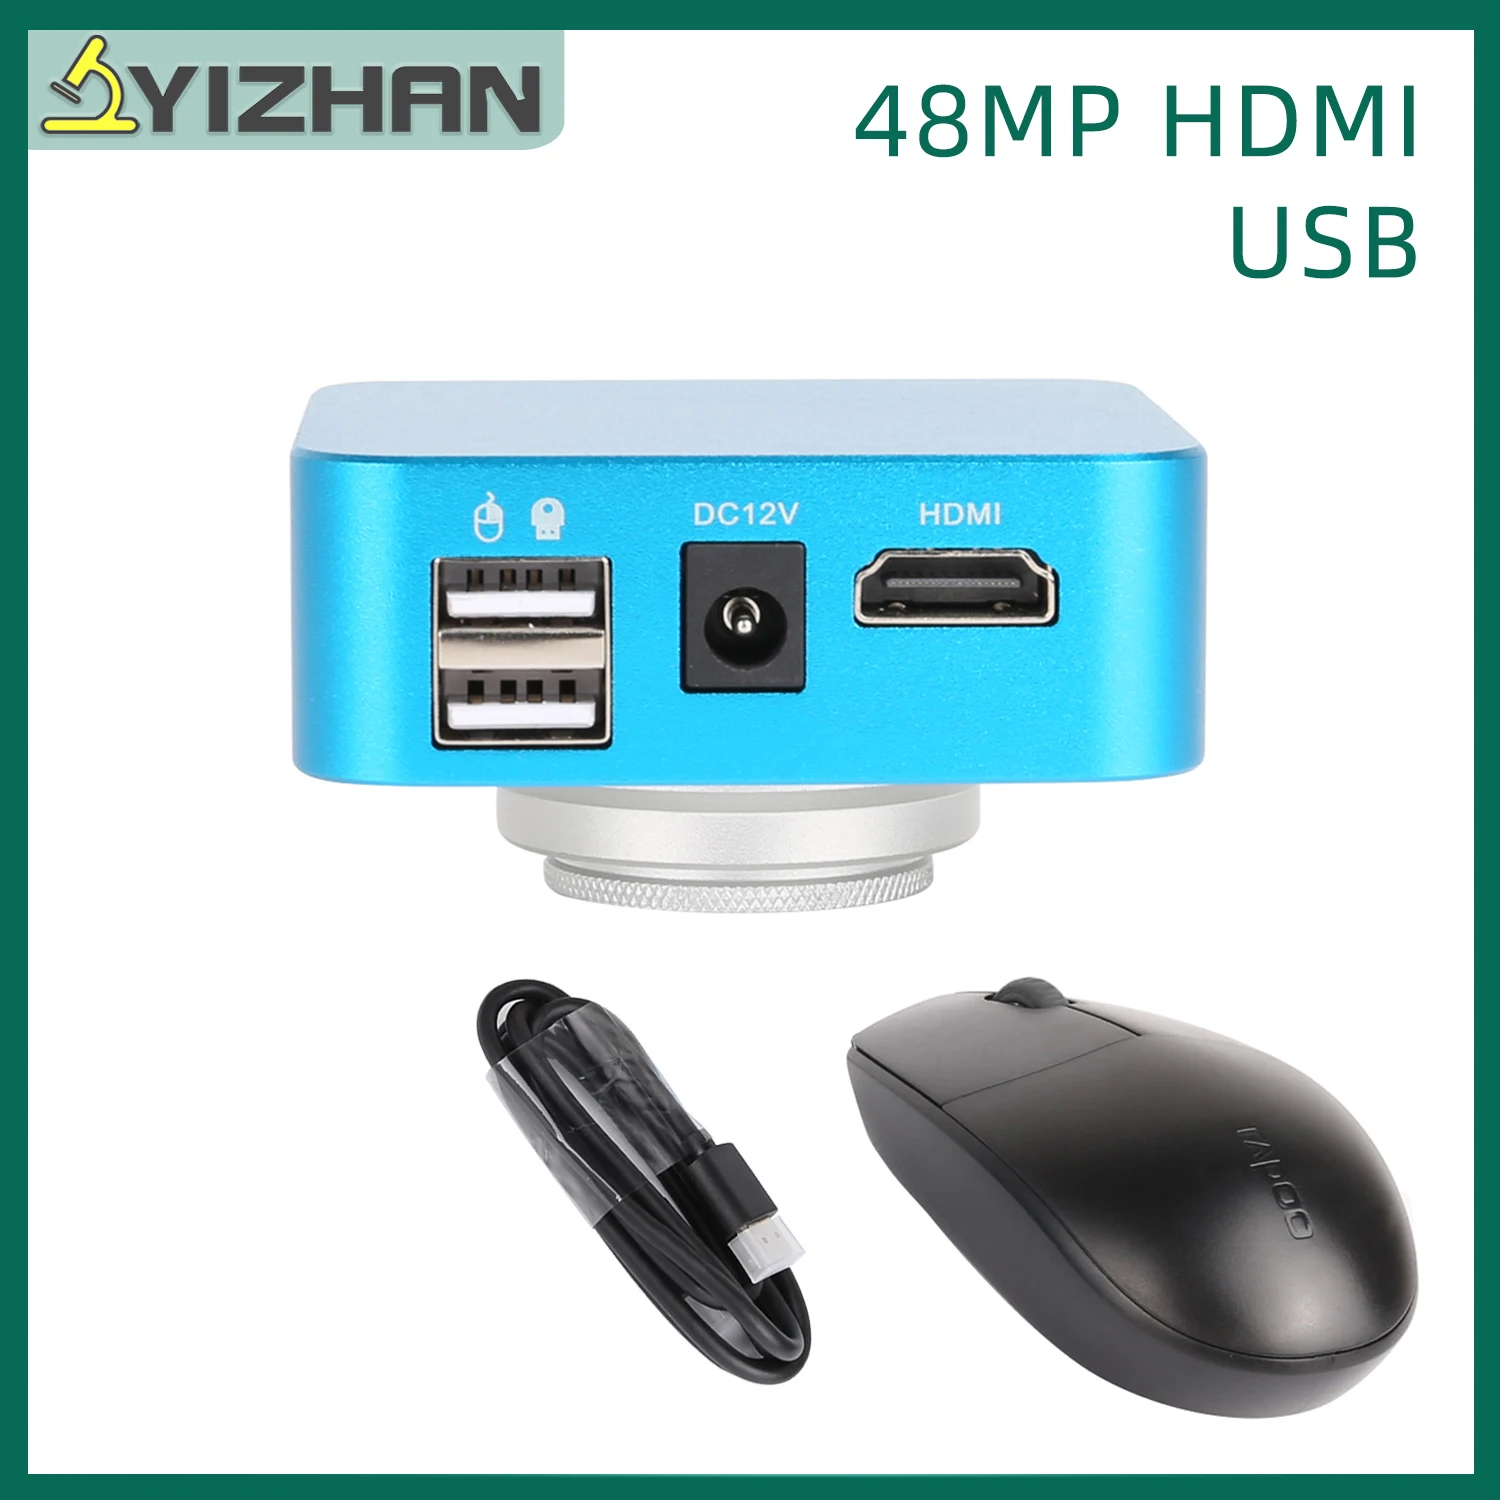 

Микроскоп YIZHAN, 48 МП, CMOS, USB, HDMI, цифровая промышленная камера, свободный драйвер с мышью для пайки печатных плат телефона